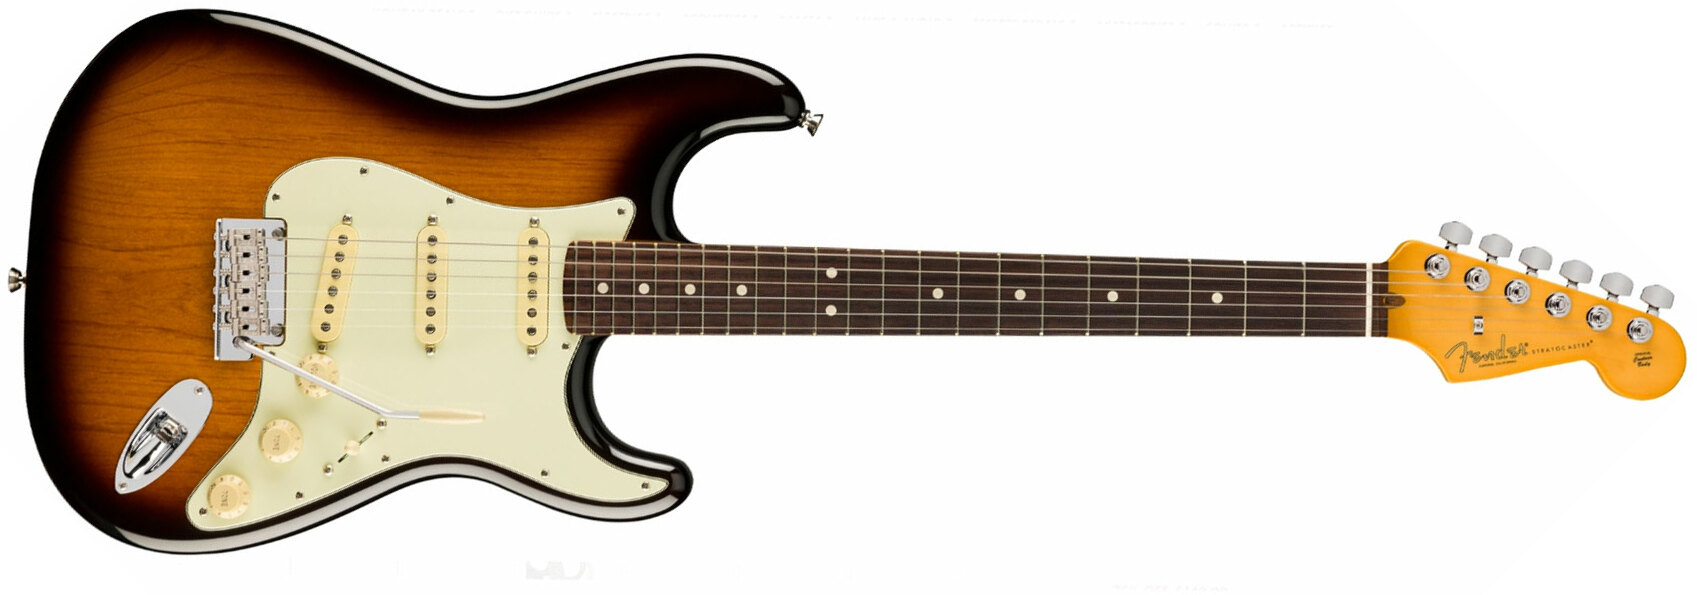 Fender Strat American Professional Ii 70th Anniversary Usa 3s Trem Rw - 2-color Sunburst - E-Gitarre in Str-Form - Main picture